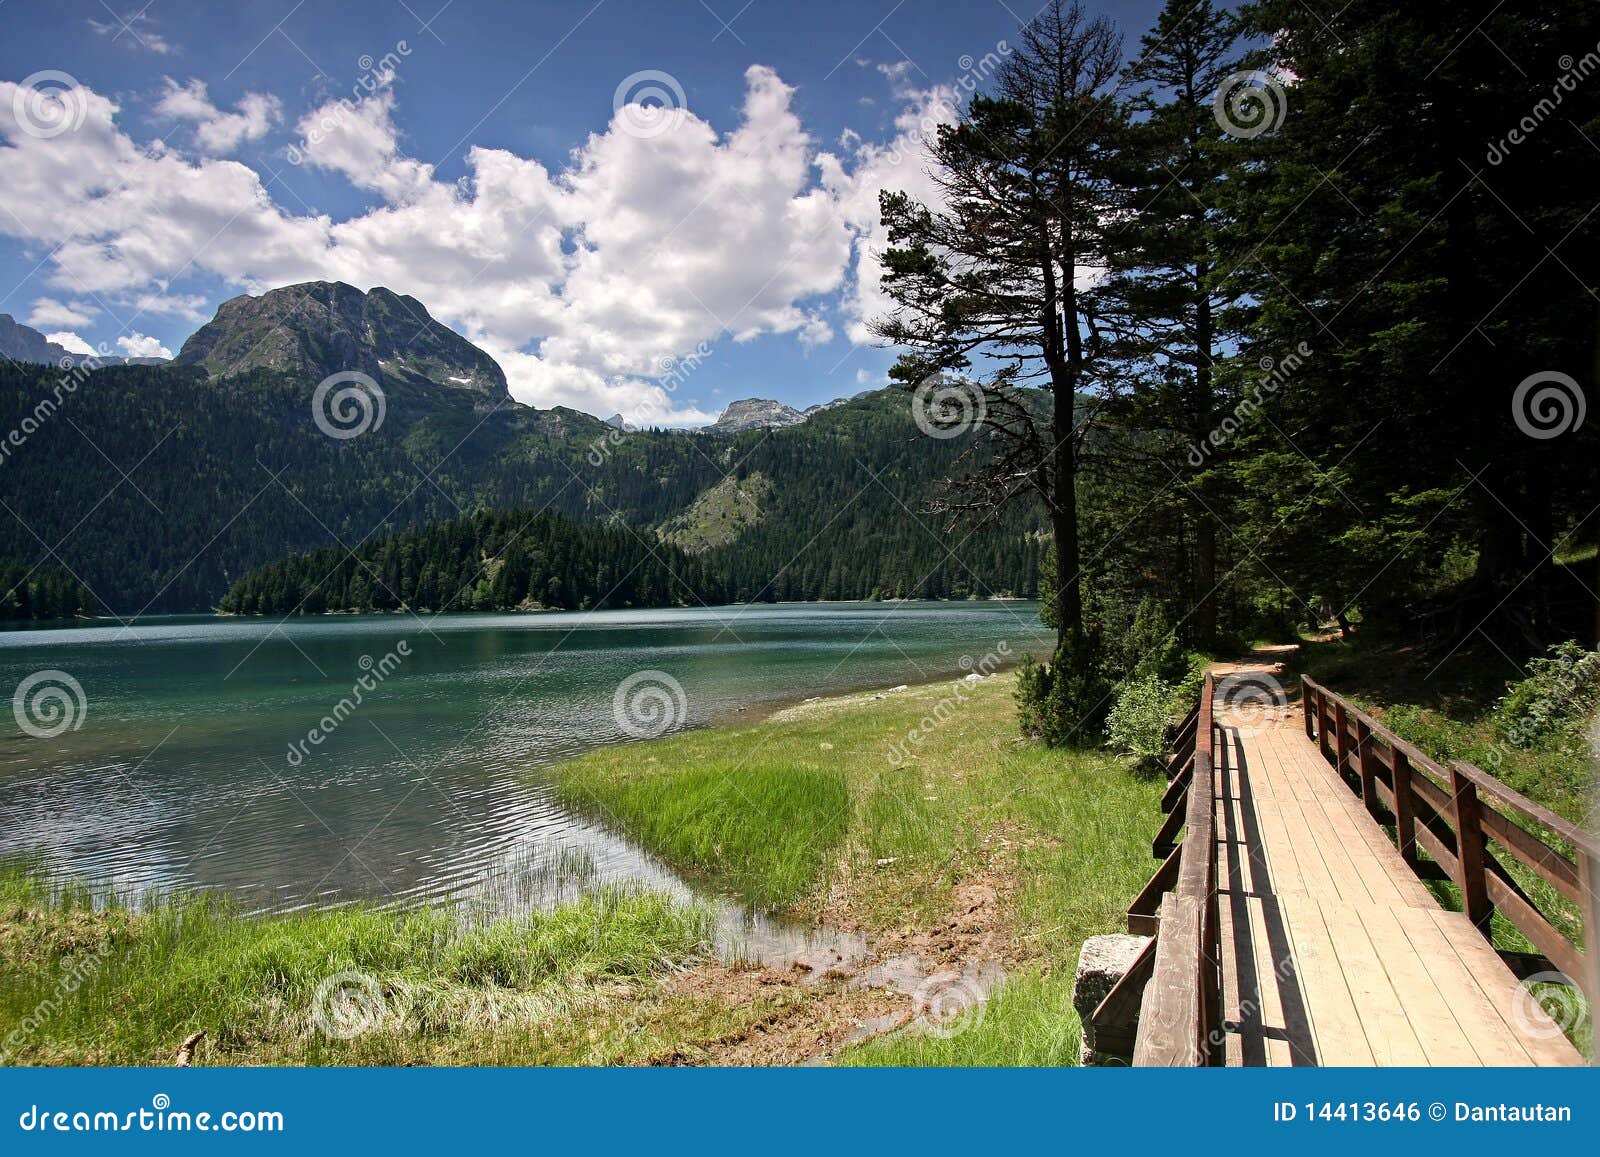 crno jezero (black lake), durmitor mountains